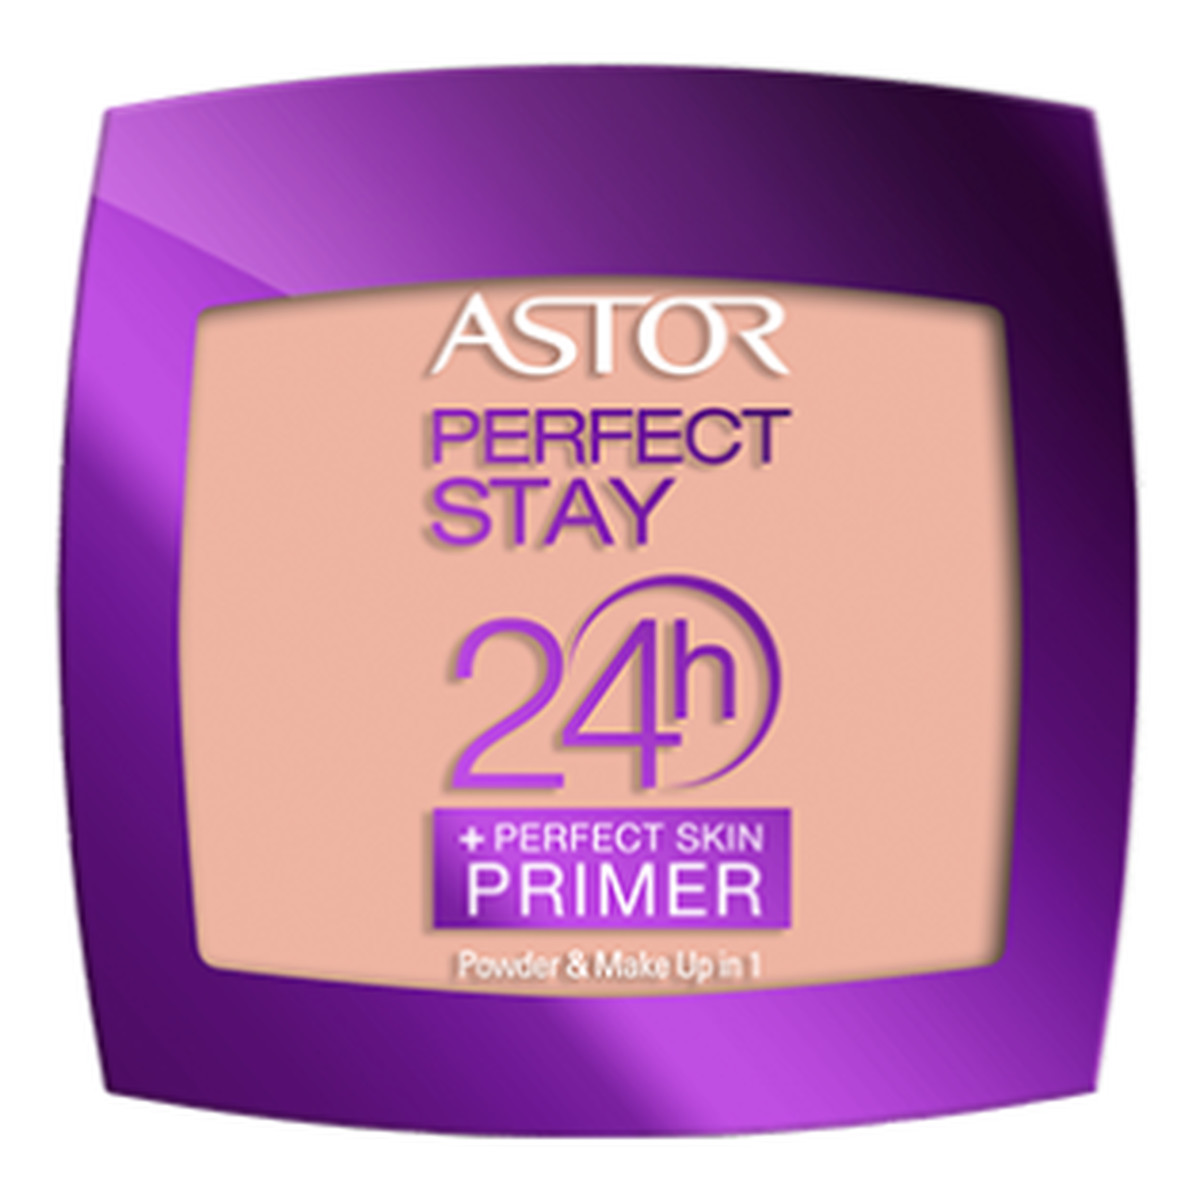 Astor PERFECT STAY 24H Powder + Perfect Skin Primer długotrwały puder z bazą 7g